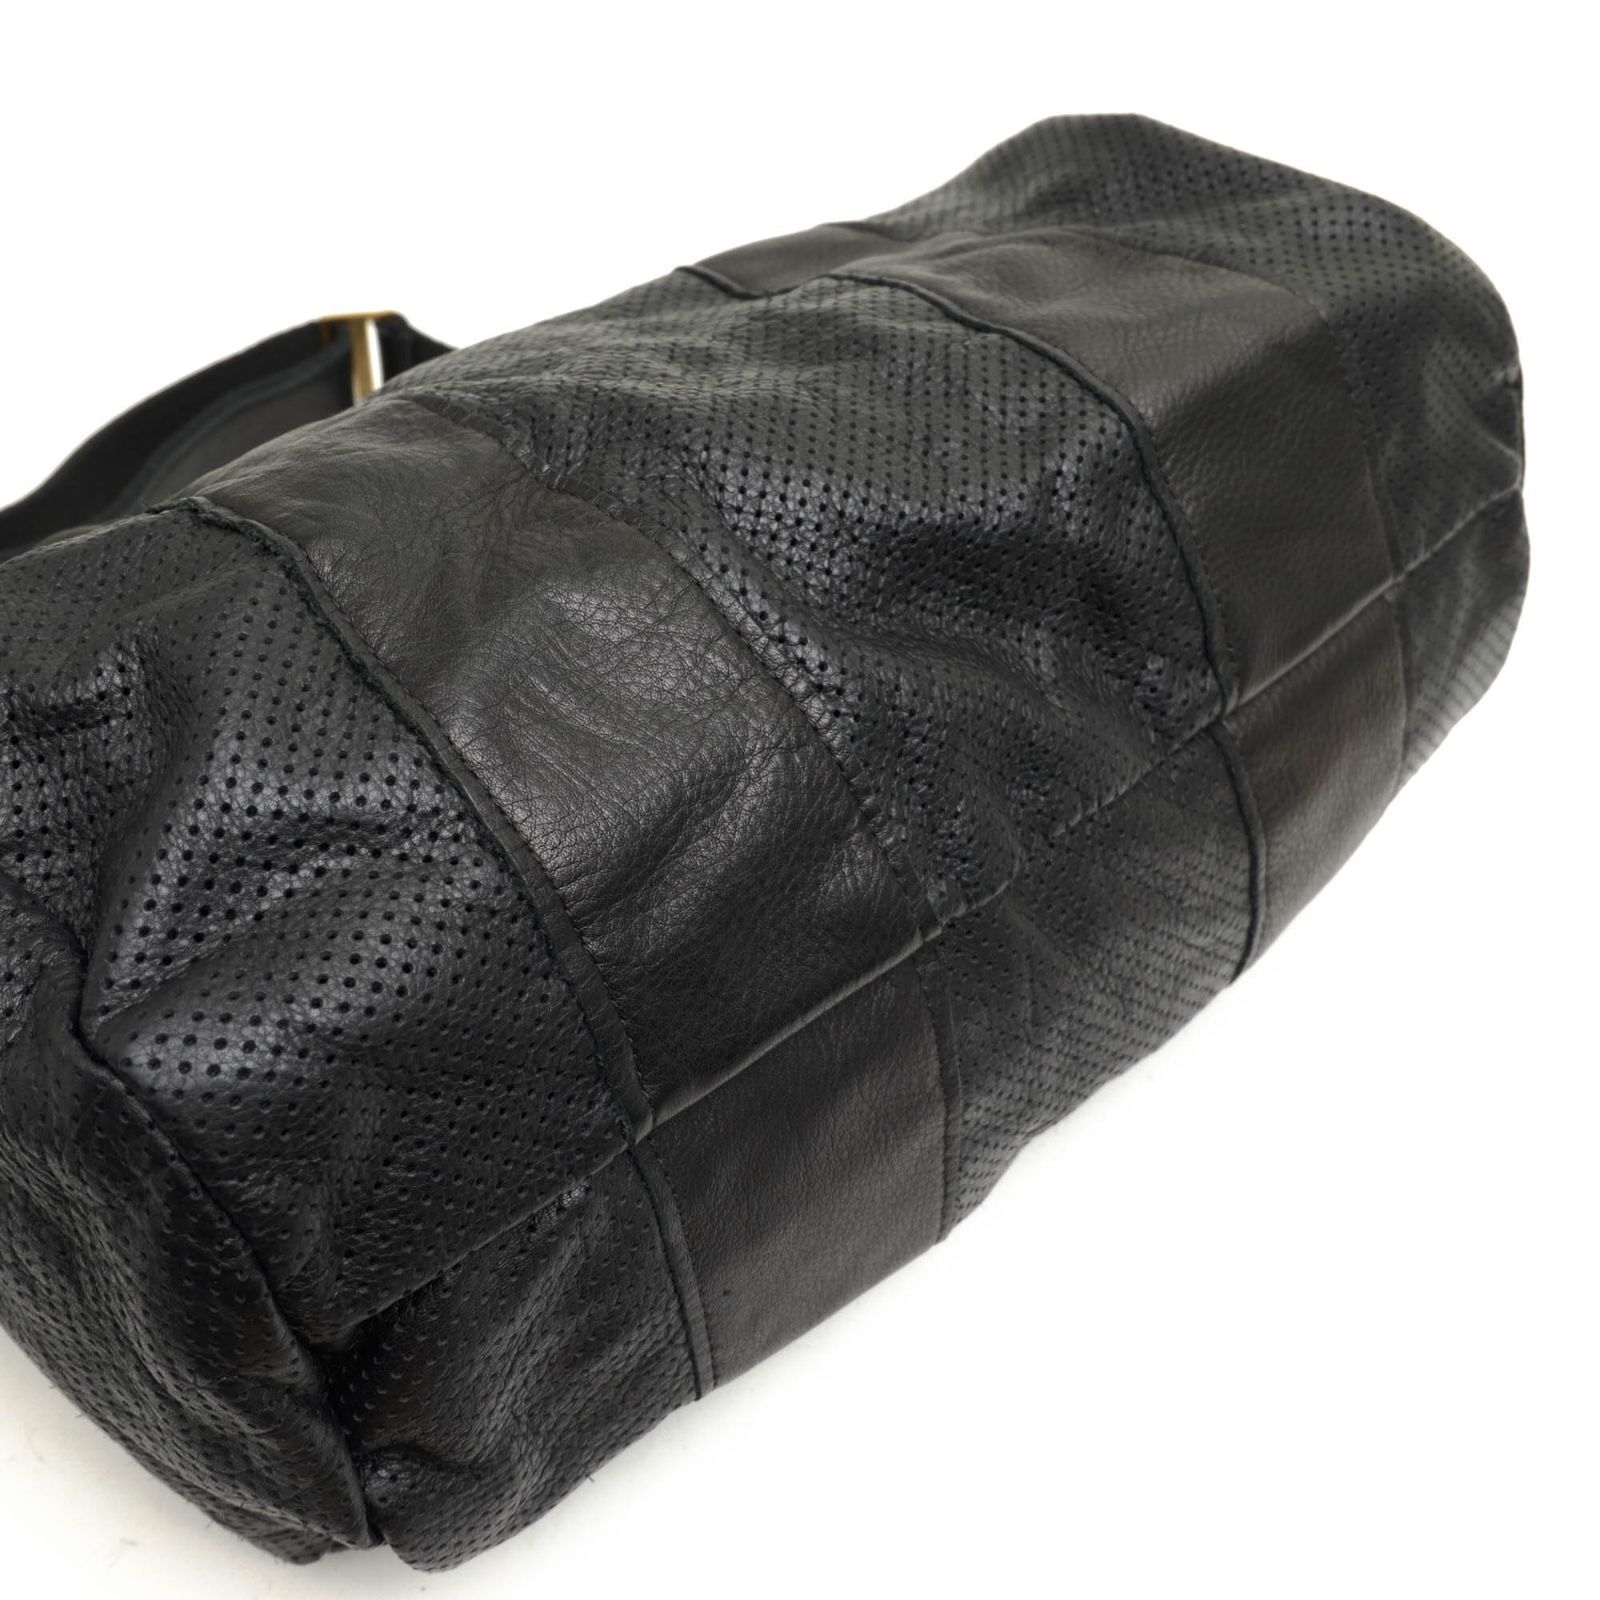 ジャスエムビー／Jas-M.B. バッグ ボストンバッグ 鞄 旅行鞄 メンズ 男性 男性用レザー 革 本革 ブラック 黒 SQUARE BARREL  2WAY ショルダーバッグ ヴィンテージ加工